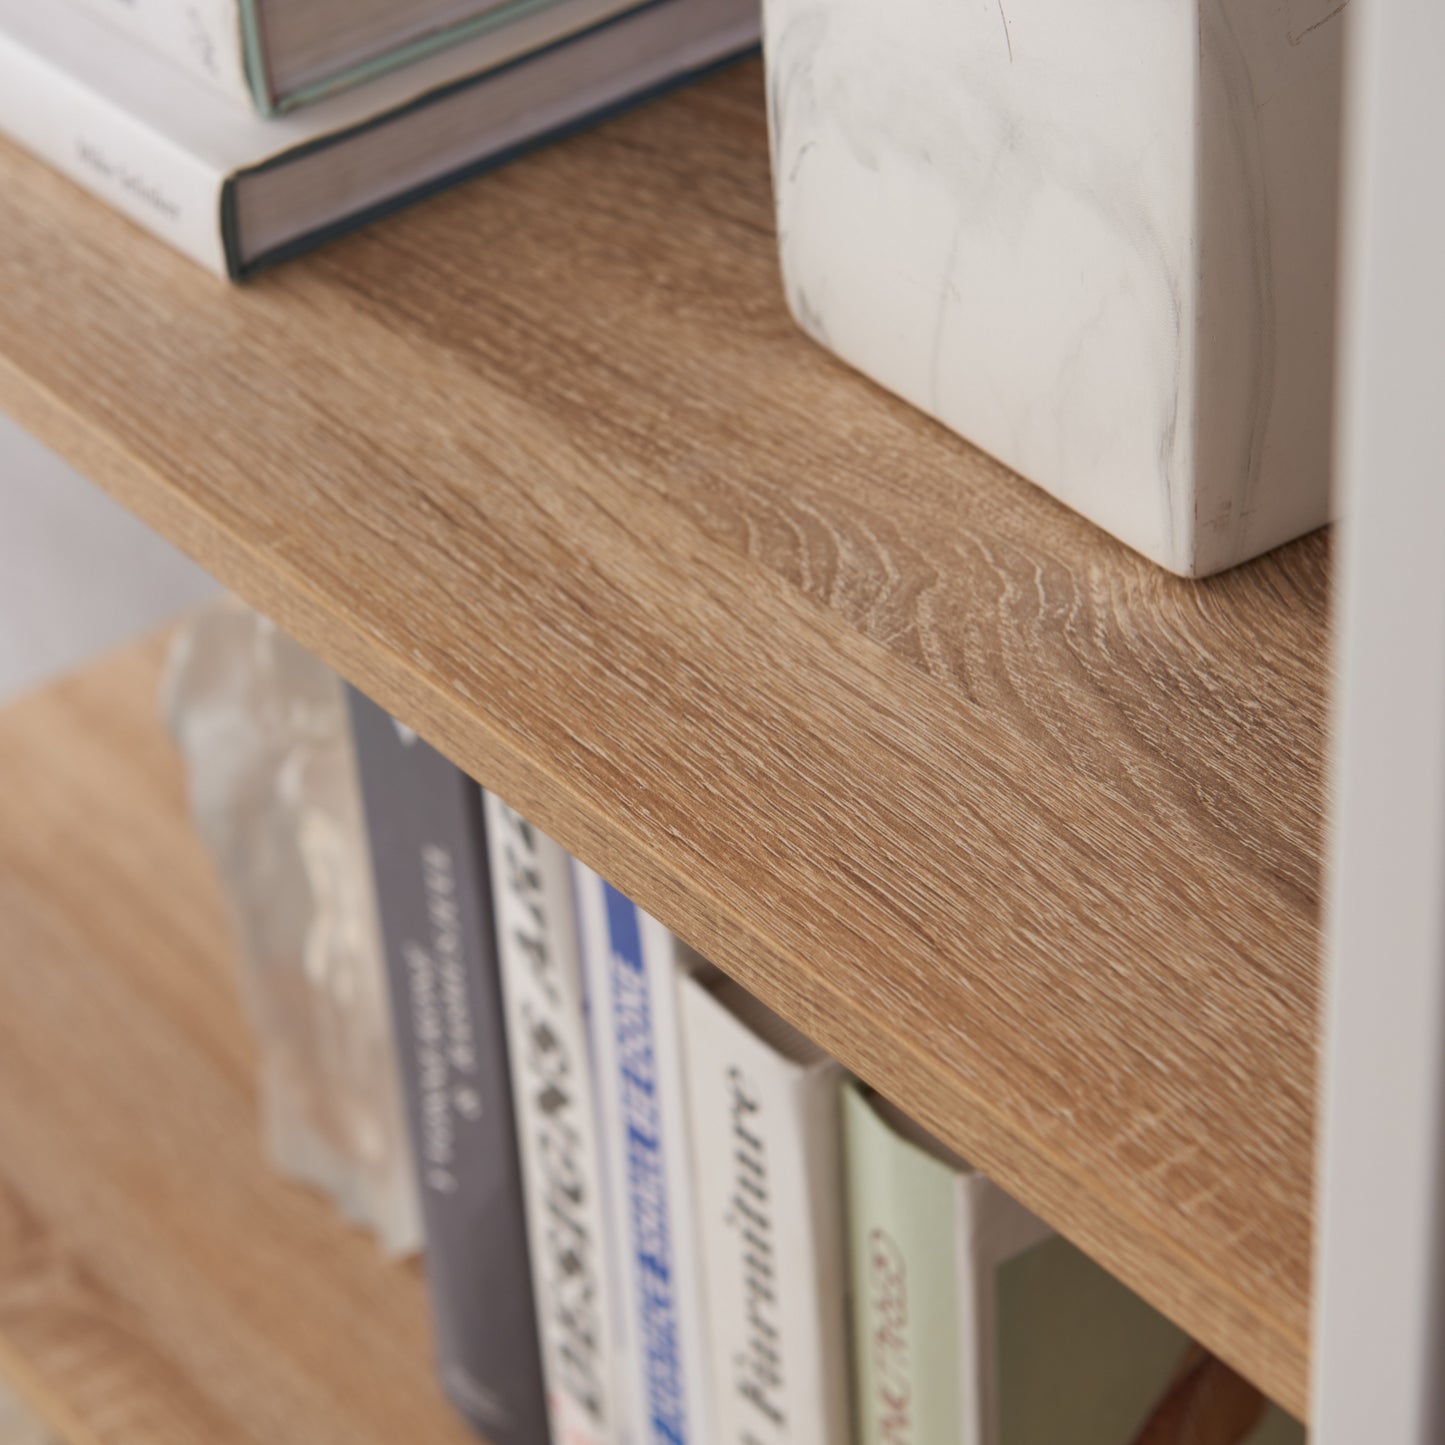 Workzone Aspect Bookcase 1800mm Open Style Oak